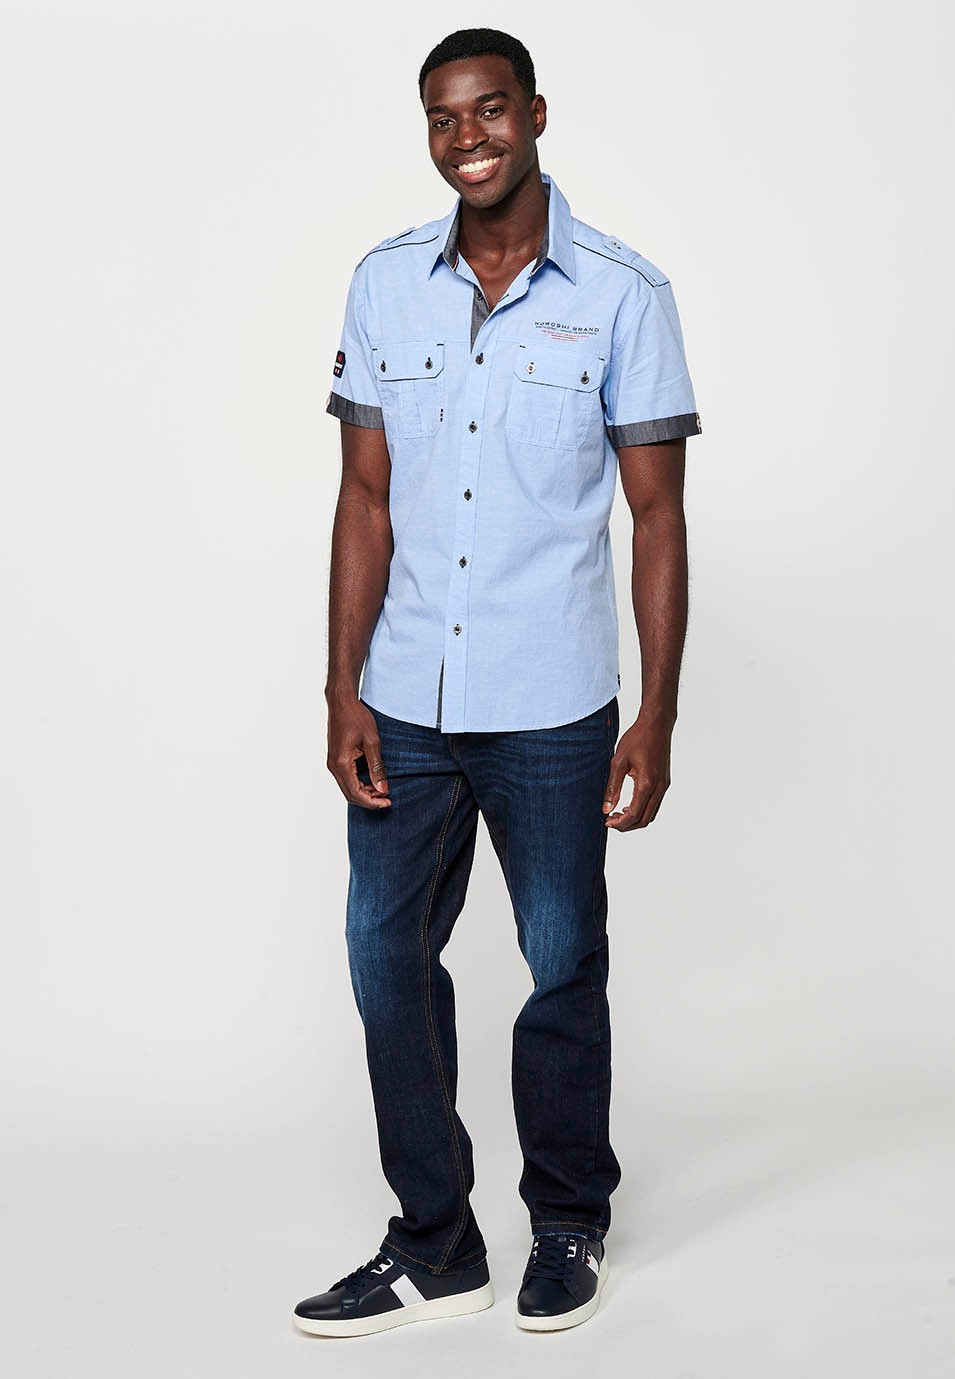 Cotton shirt, short sleeve, shoulder details, blue color for men 1